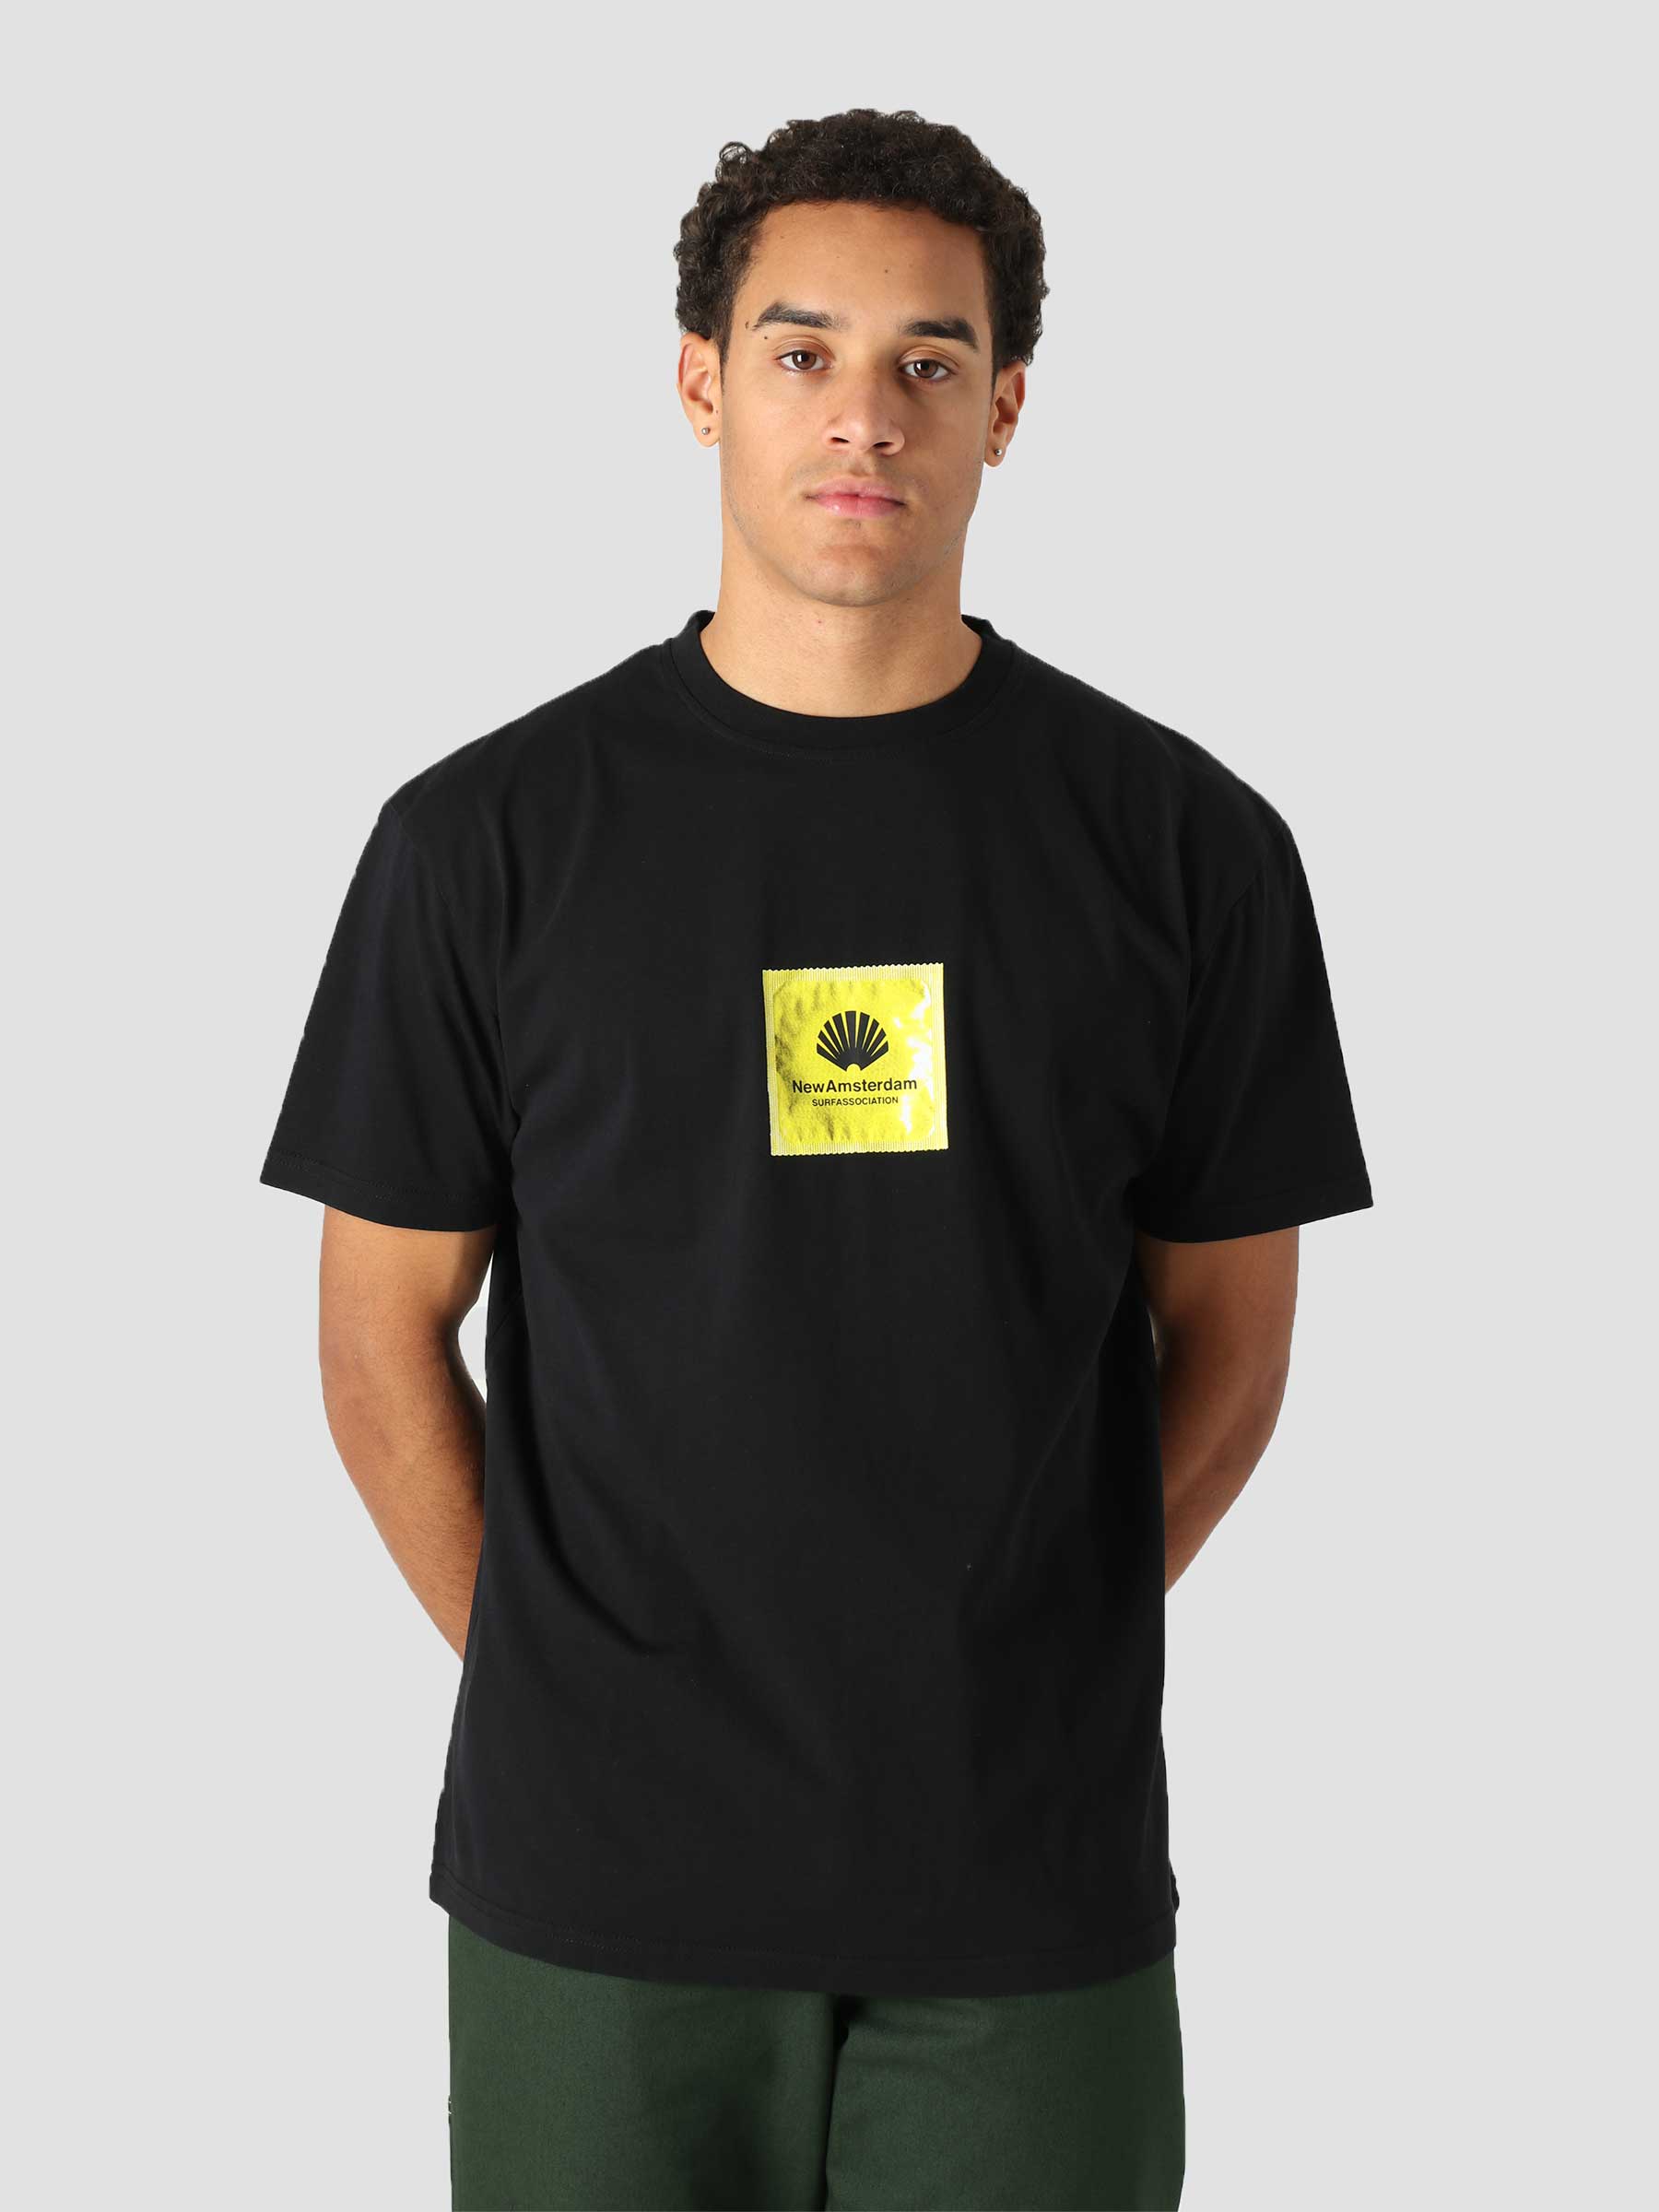 New Amsterdam Surf Association Safety T-Shirt Black 2021215 | Freshcotton